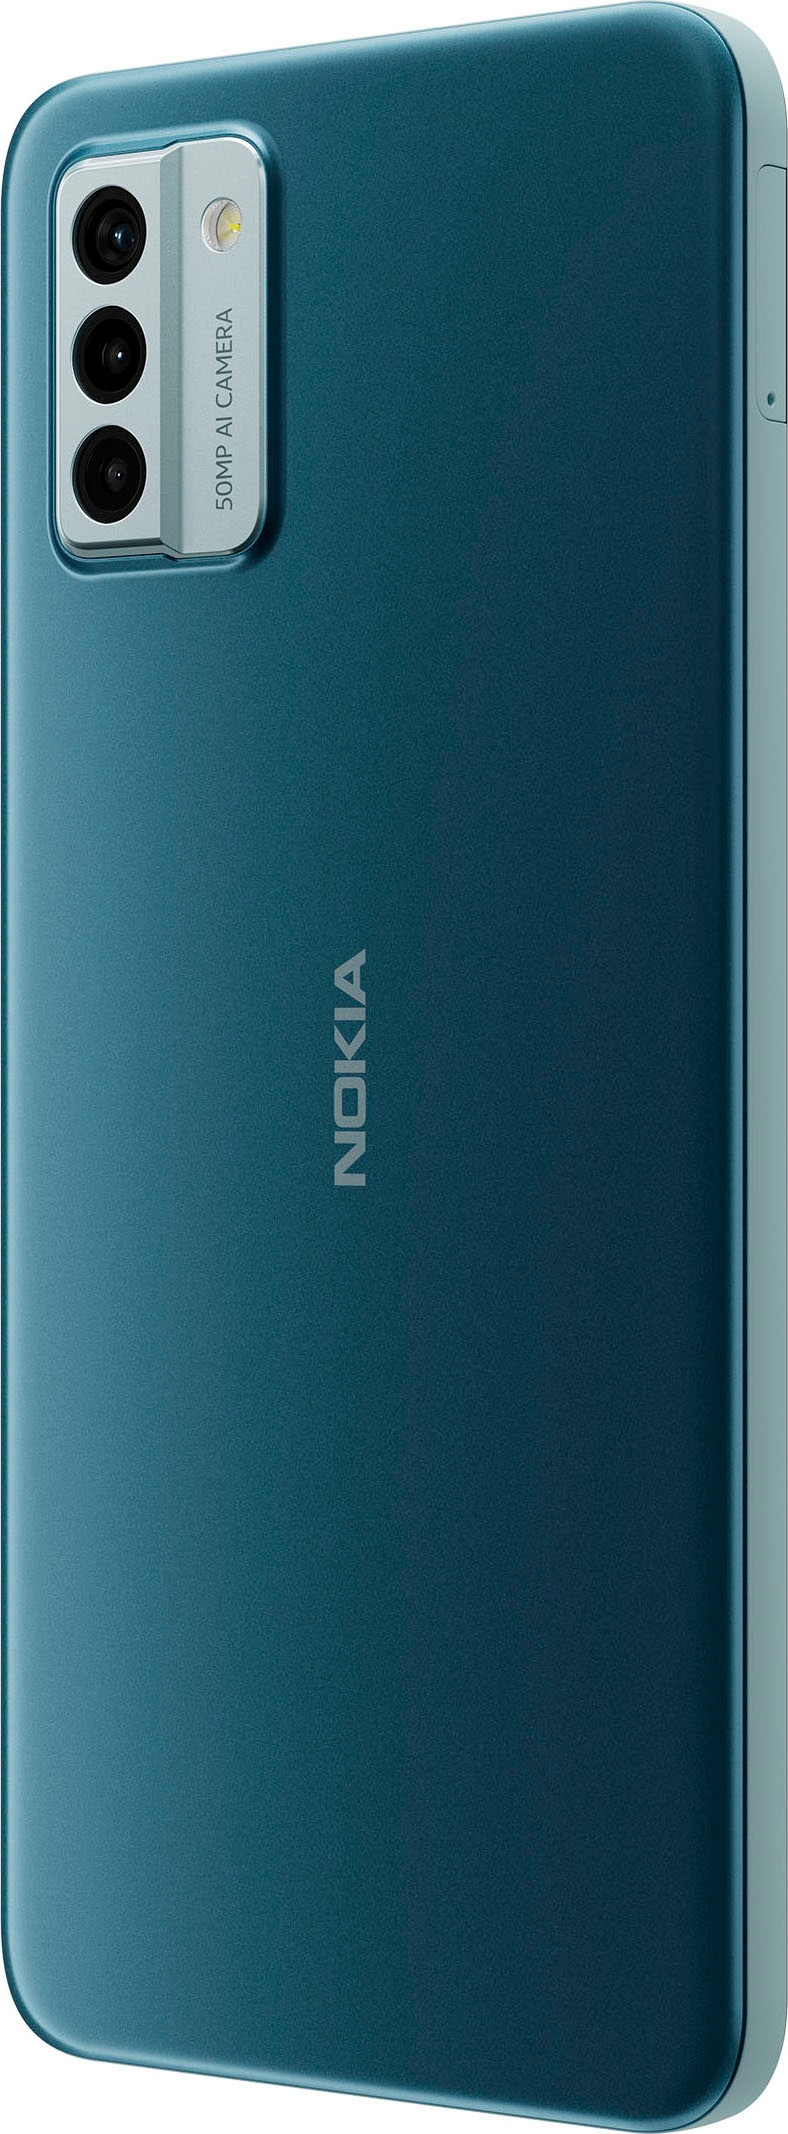 MP Nokia Kamera »G22«, auf GB 64 bestellen 16,56 Smartphone grau, Speicherplatz, 50 cm/6,52 Zoll, Rechnung